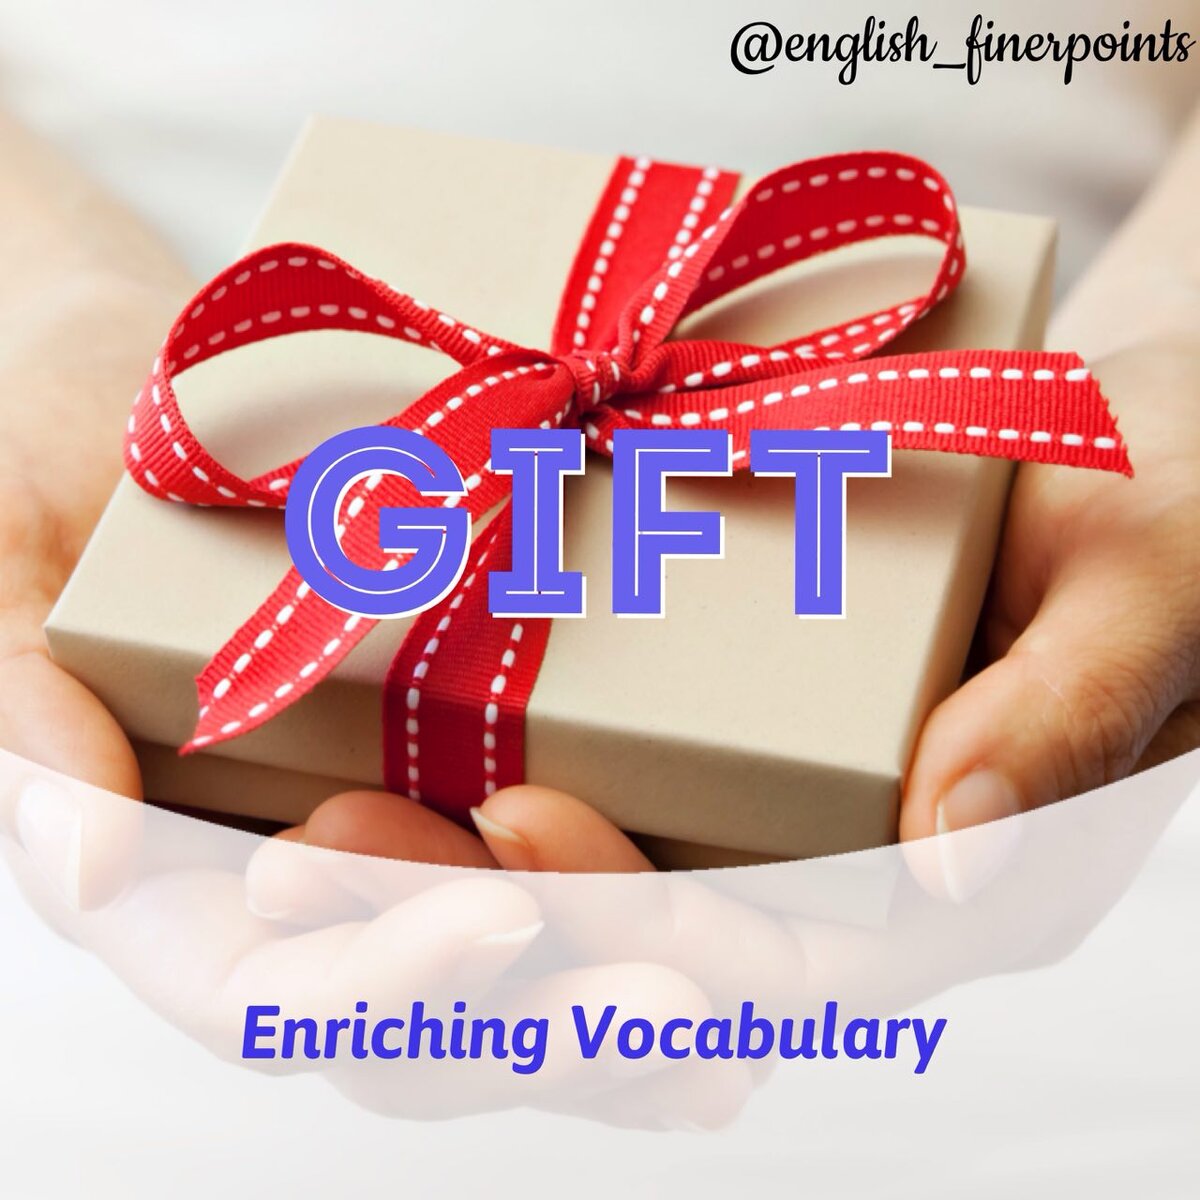 Получать подарки на английском